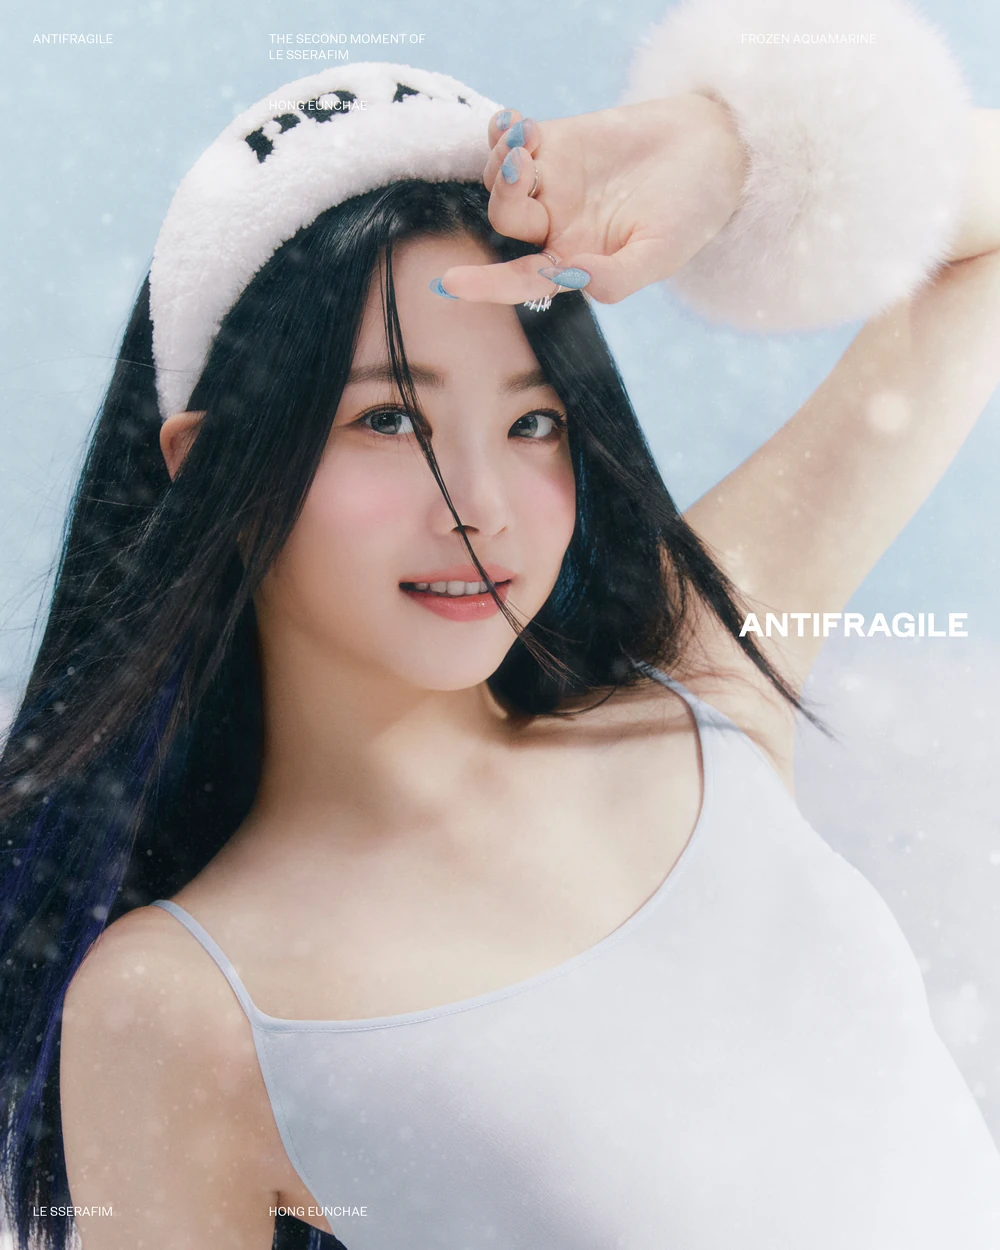 Le Sserafim Antifragile Eunchae Concept Teaser Picture Image Photo Kpop K-Concept 4